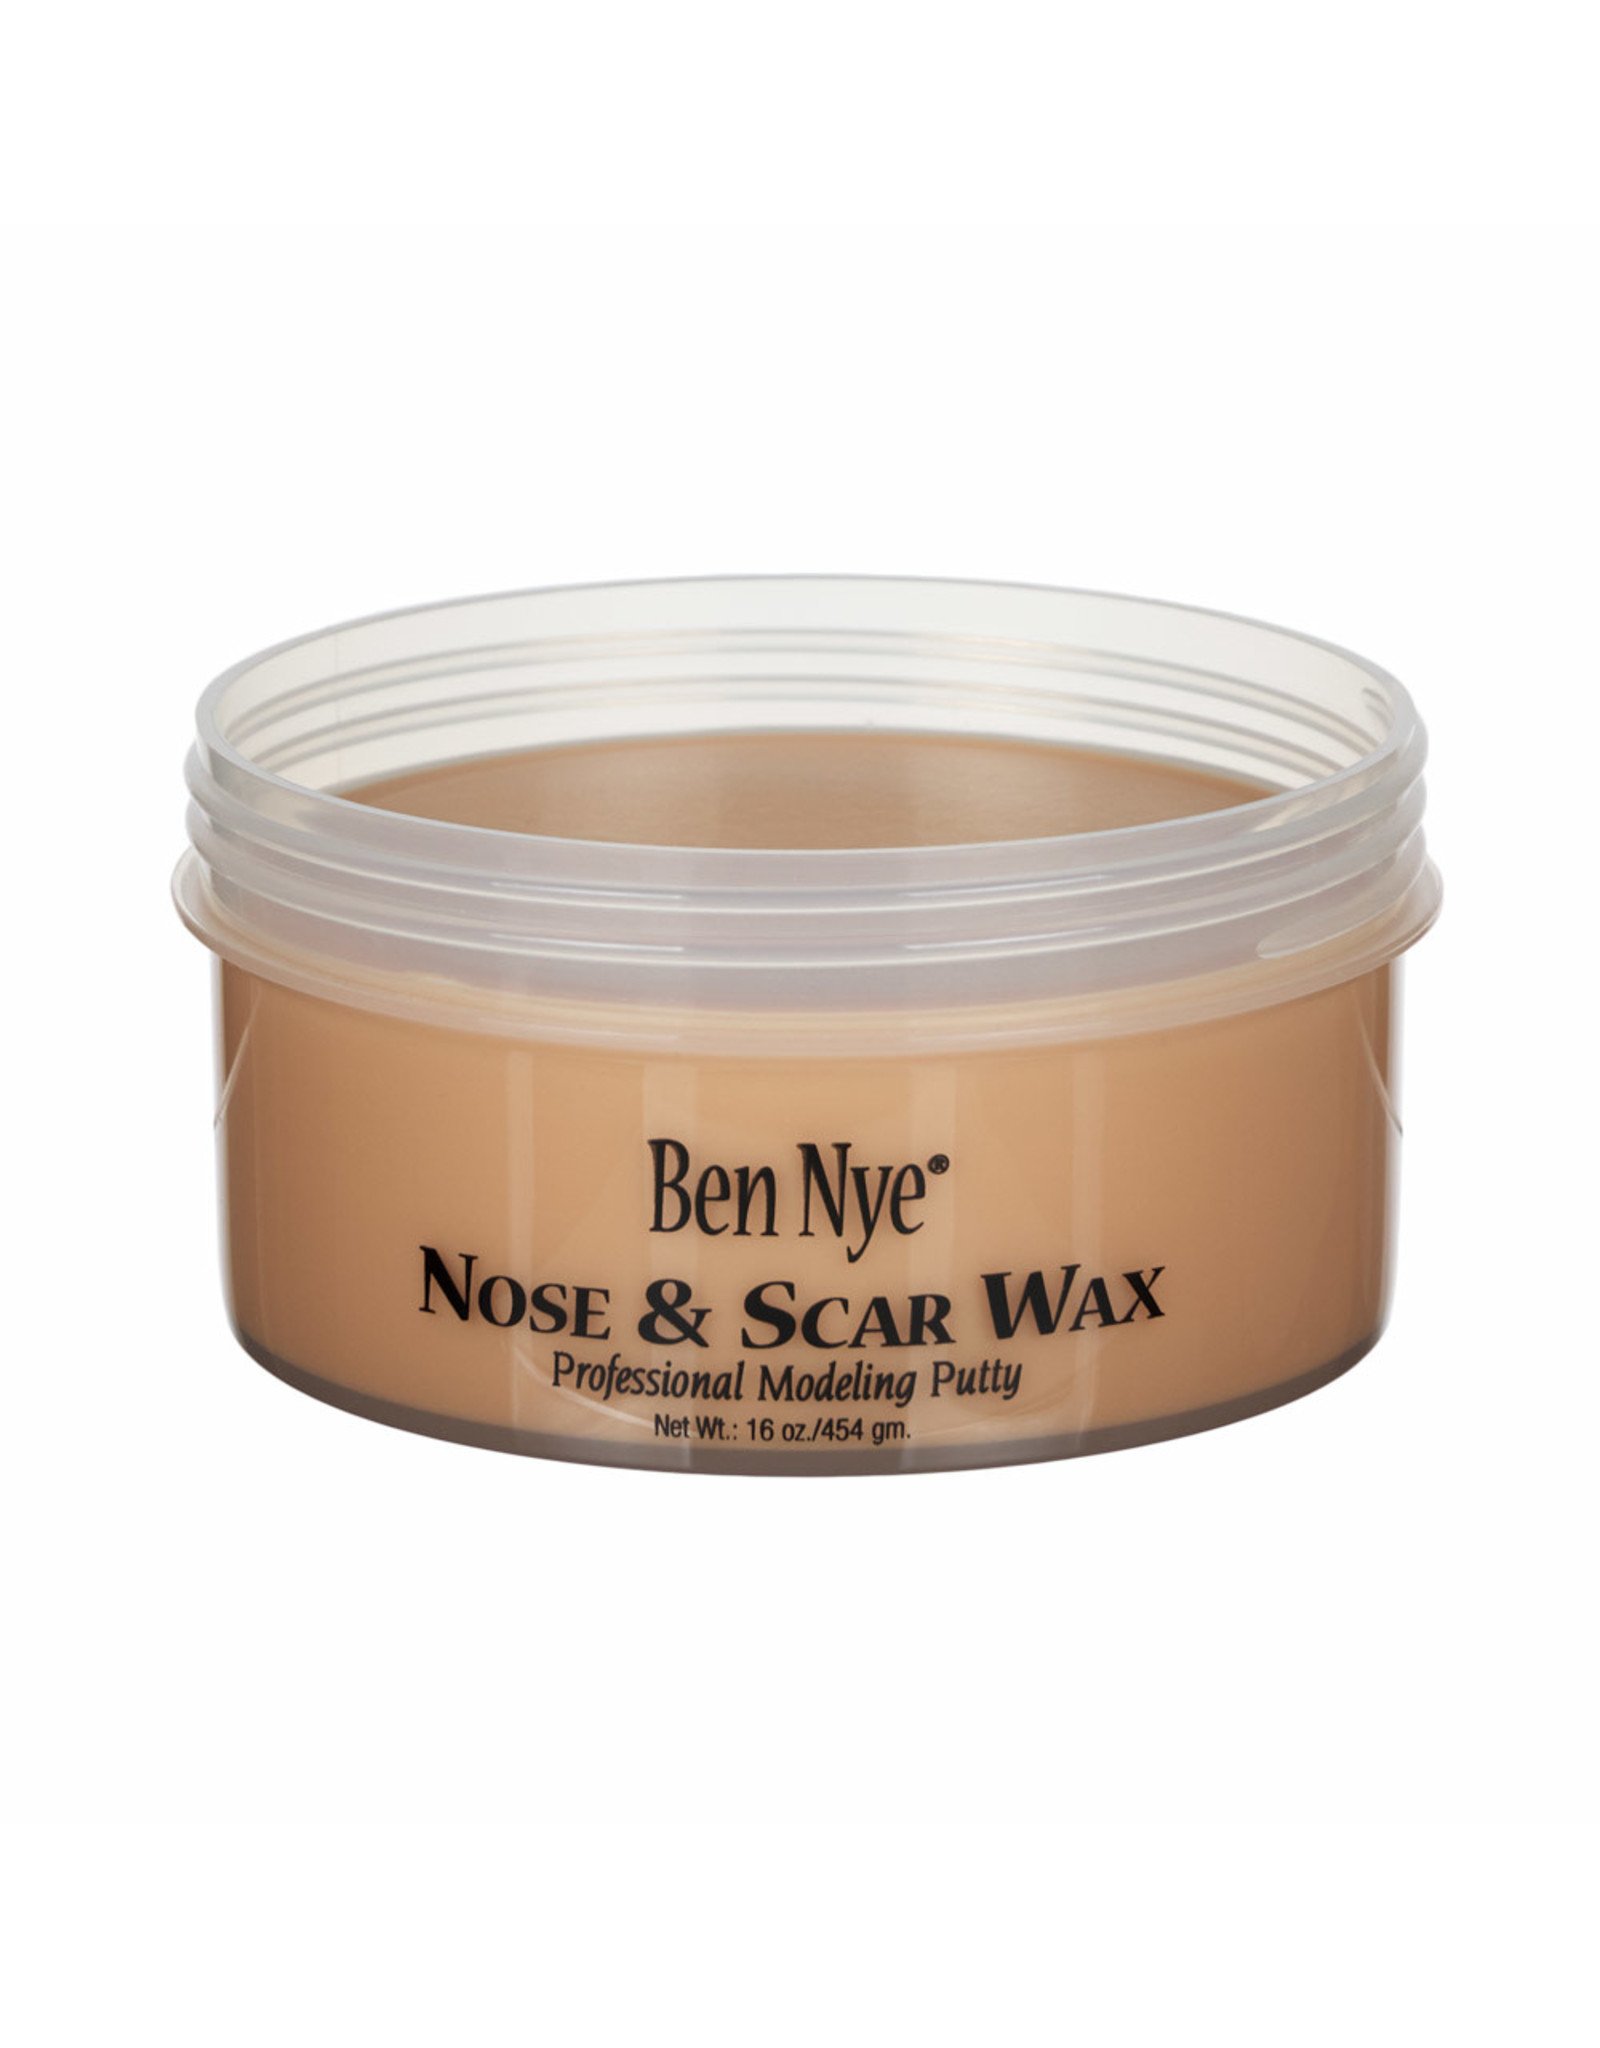 Ben Nye Ben Nye Nose & Scar Wax